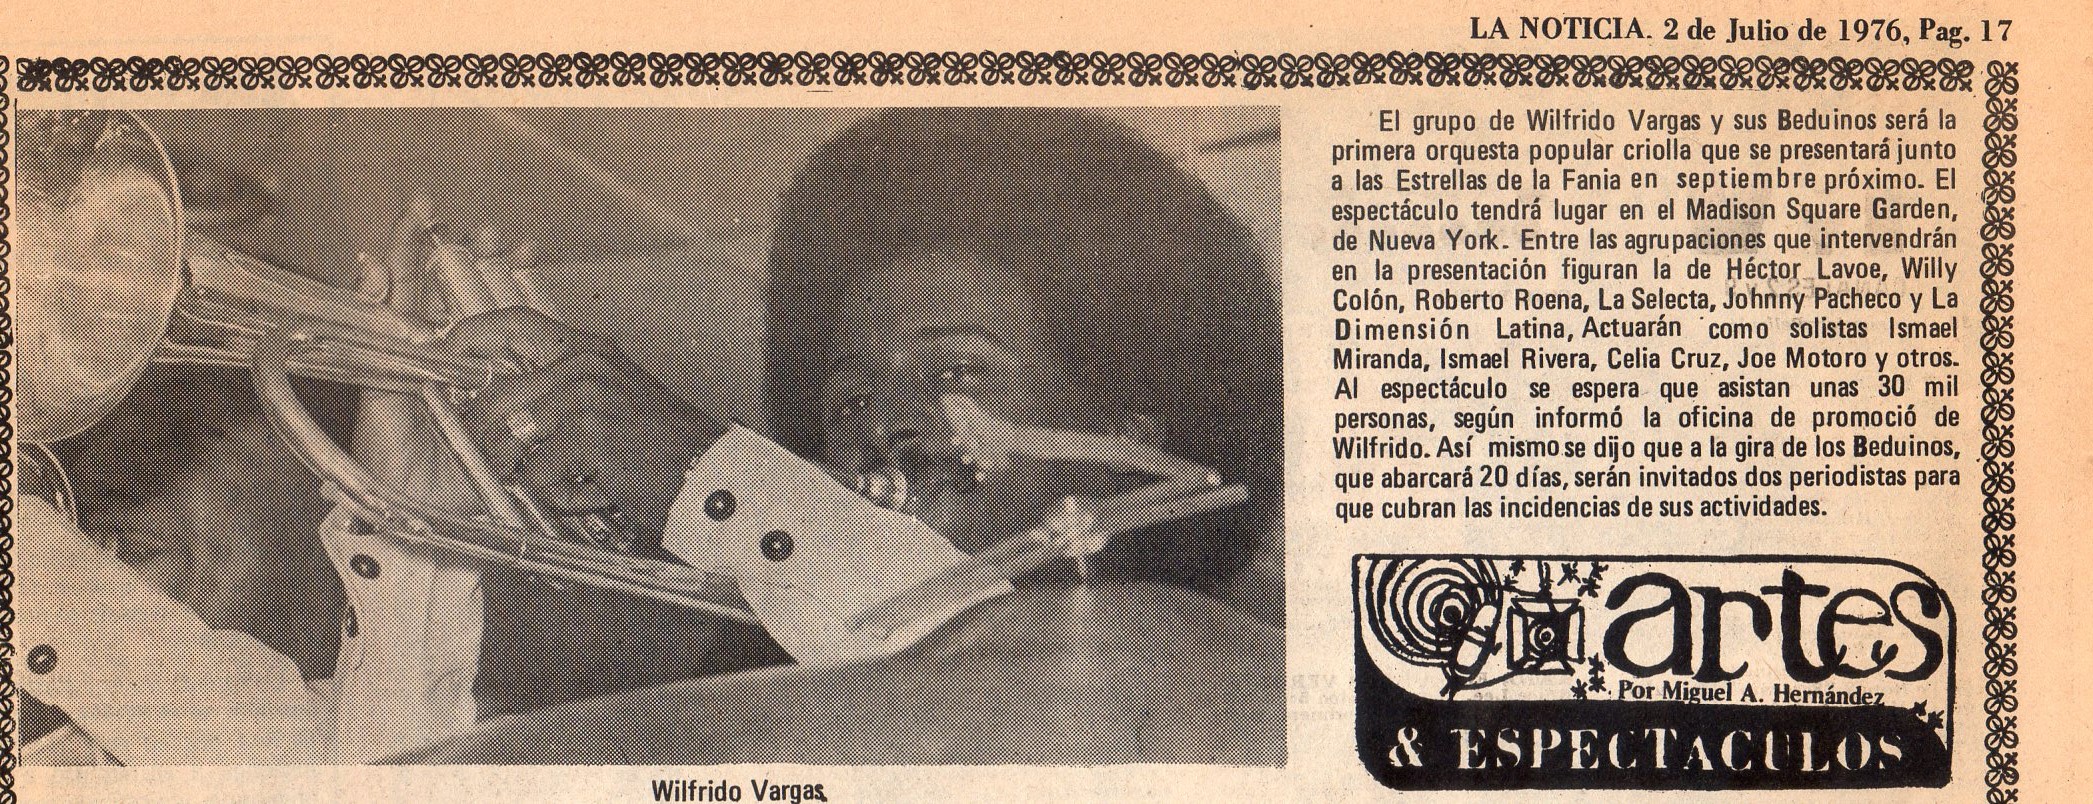 Wilfrido Vargas y sus Beduinos, July 2, 1976